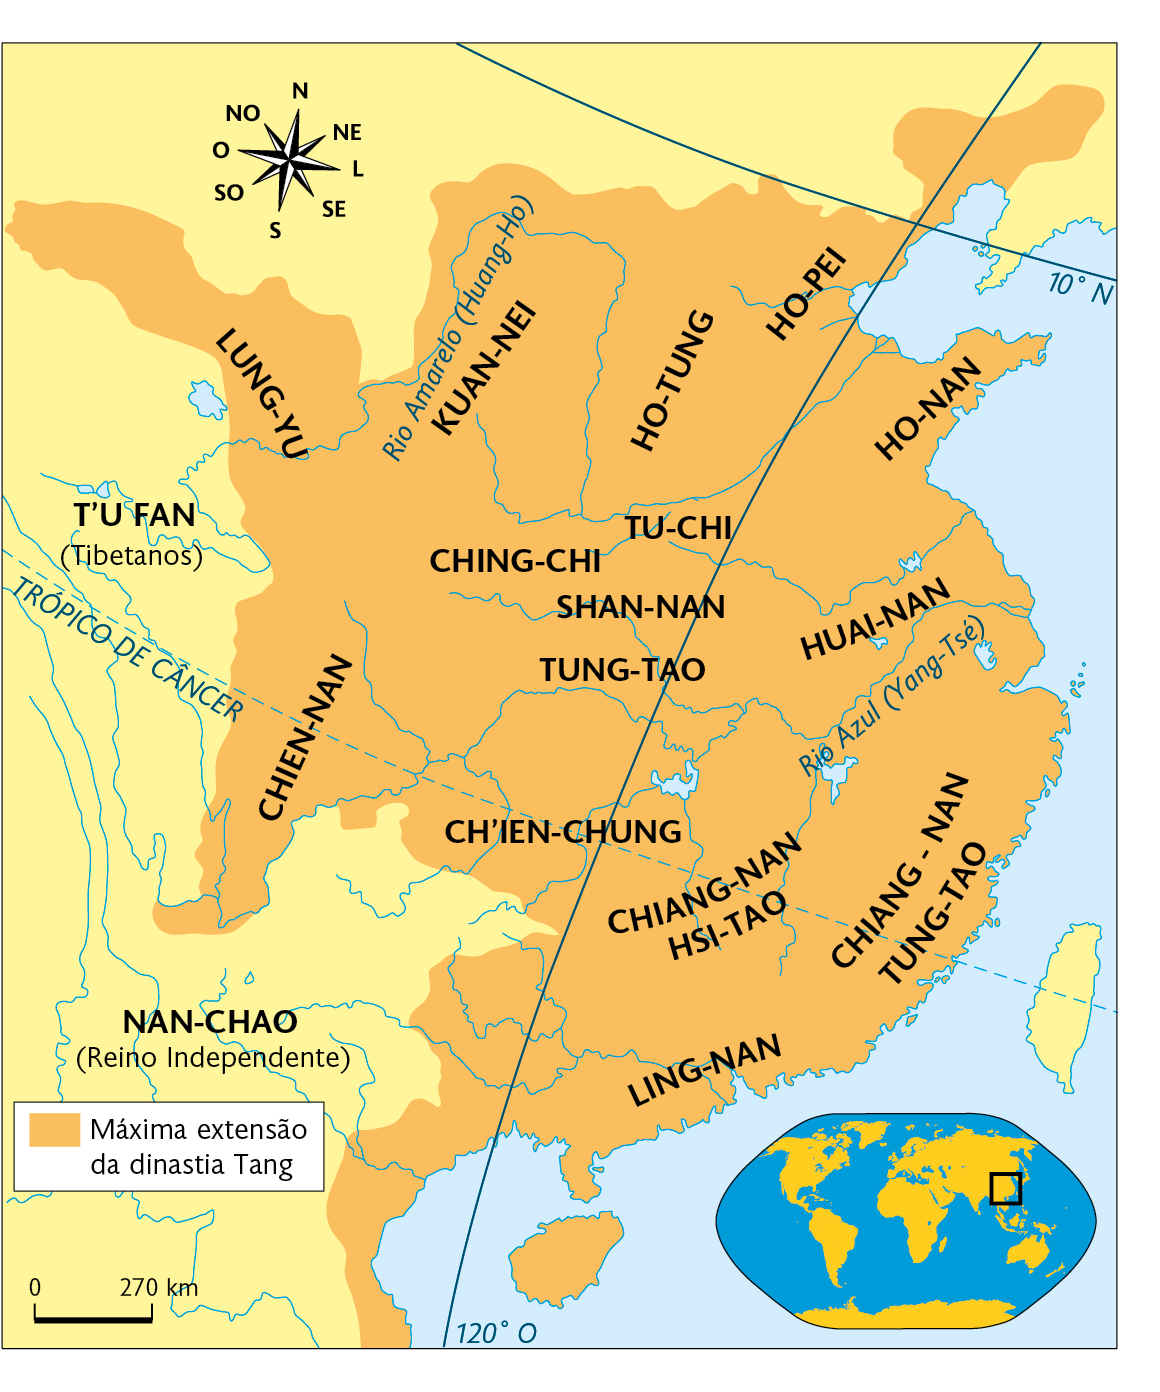 Mapa. O Império Chinês durante a reunificação (séculos 6-8). Mapa territorial destacando: Máxima extensão da dinastia Tang, composto pelas regiões de: LUNG-YU, CHIEN-NAN, CH'IEN-CHUNG, CHIANG-NAN HSI-TAO, LING-NAN, CHIANG-NAN TUNG-TAO, HUAI-NAN, TUNG-TAO, SHAN-NAN, CHING-CHI, TU-CHI, HO-TUNG, KUAN-NEI, HO-PEI e HO-NAN. O Império Chinês é cortado pelo Rio Azul (Yang-Tsé) ao leste,  e o Rio Amarelo (Huang-Ho) ao norte. Na parte inferior à direita, planisfério destacando parte da Ásia. Acima, representação da rosa dos ventos e, abaixo, escala de 270 quilômetros por centímetros.